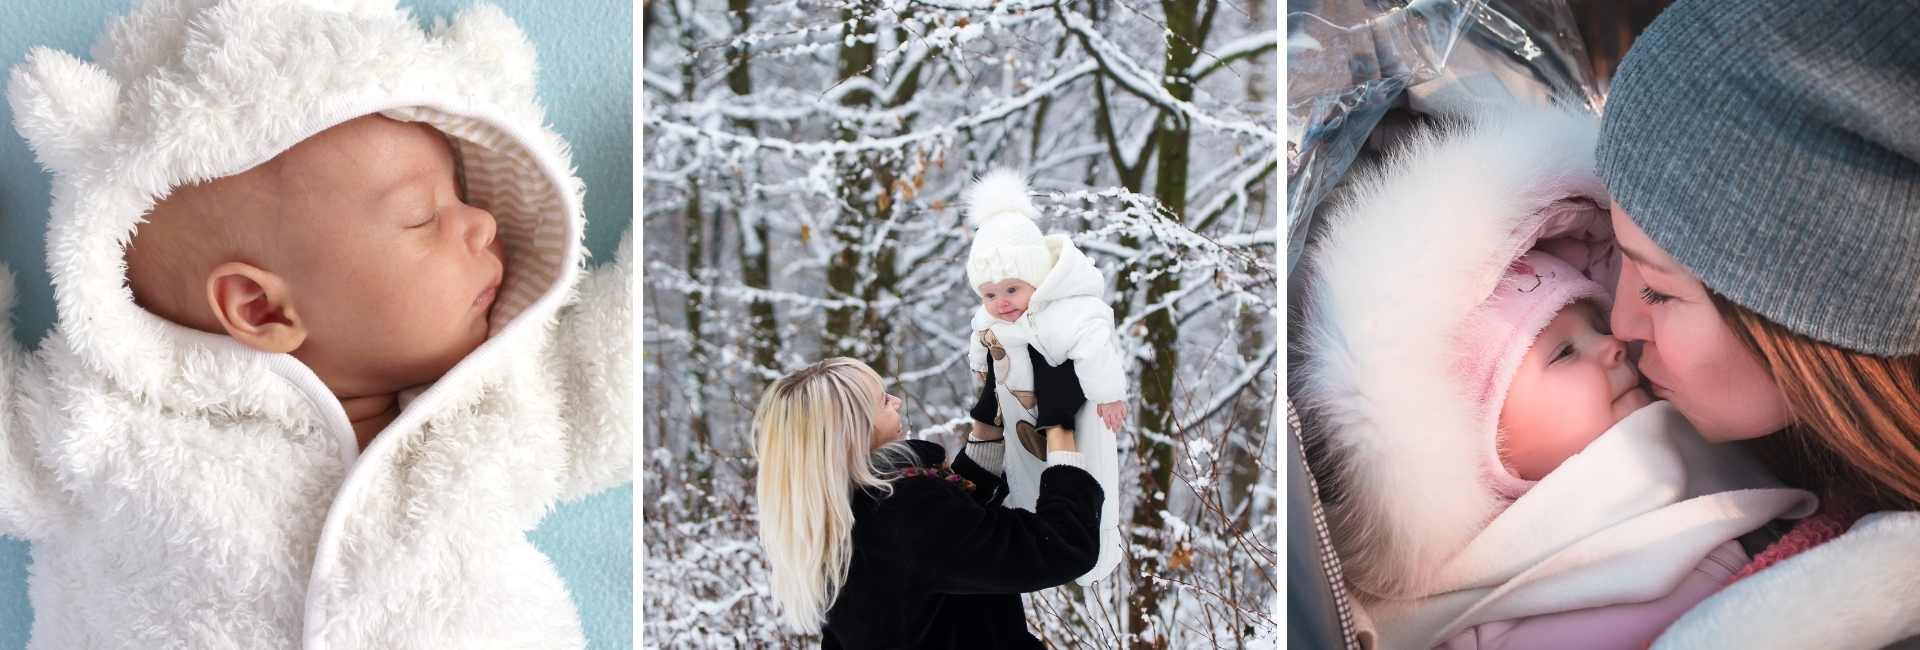 Découvrez comment habiller votre bébé pour qu'il ne souffre pas du froid en hiver